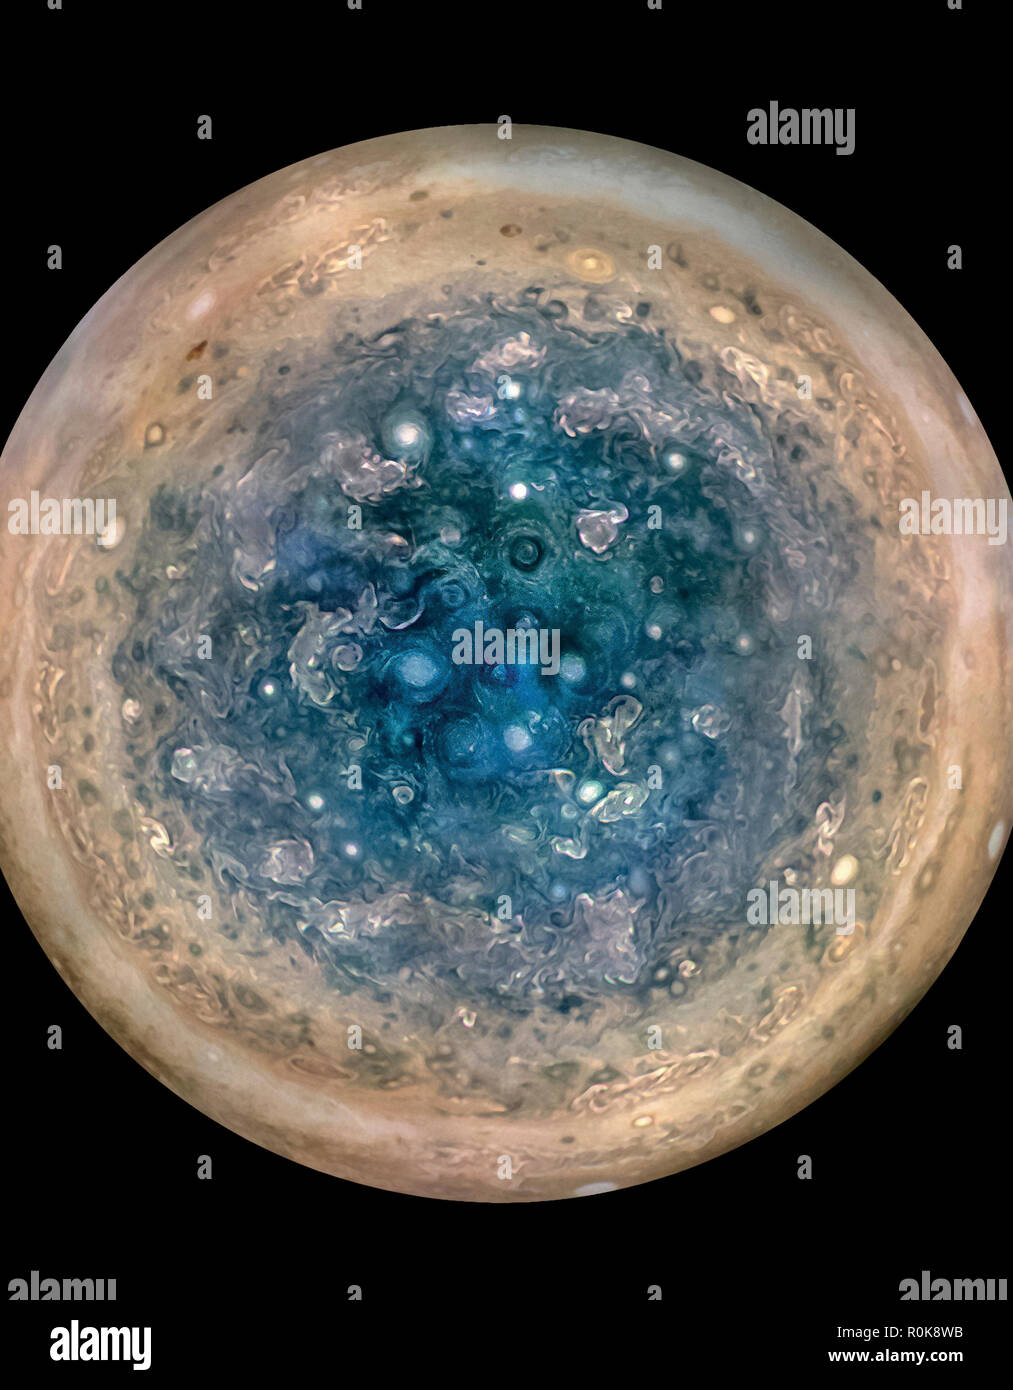 Vue améliorée des couleurs de la planète Jupiter au pôle sud avec les tempêtes ovales parsemées à travers le paysage. Banque D'Images